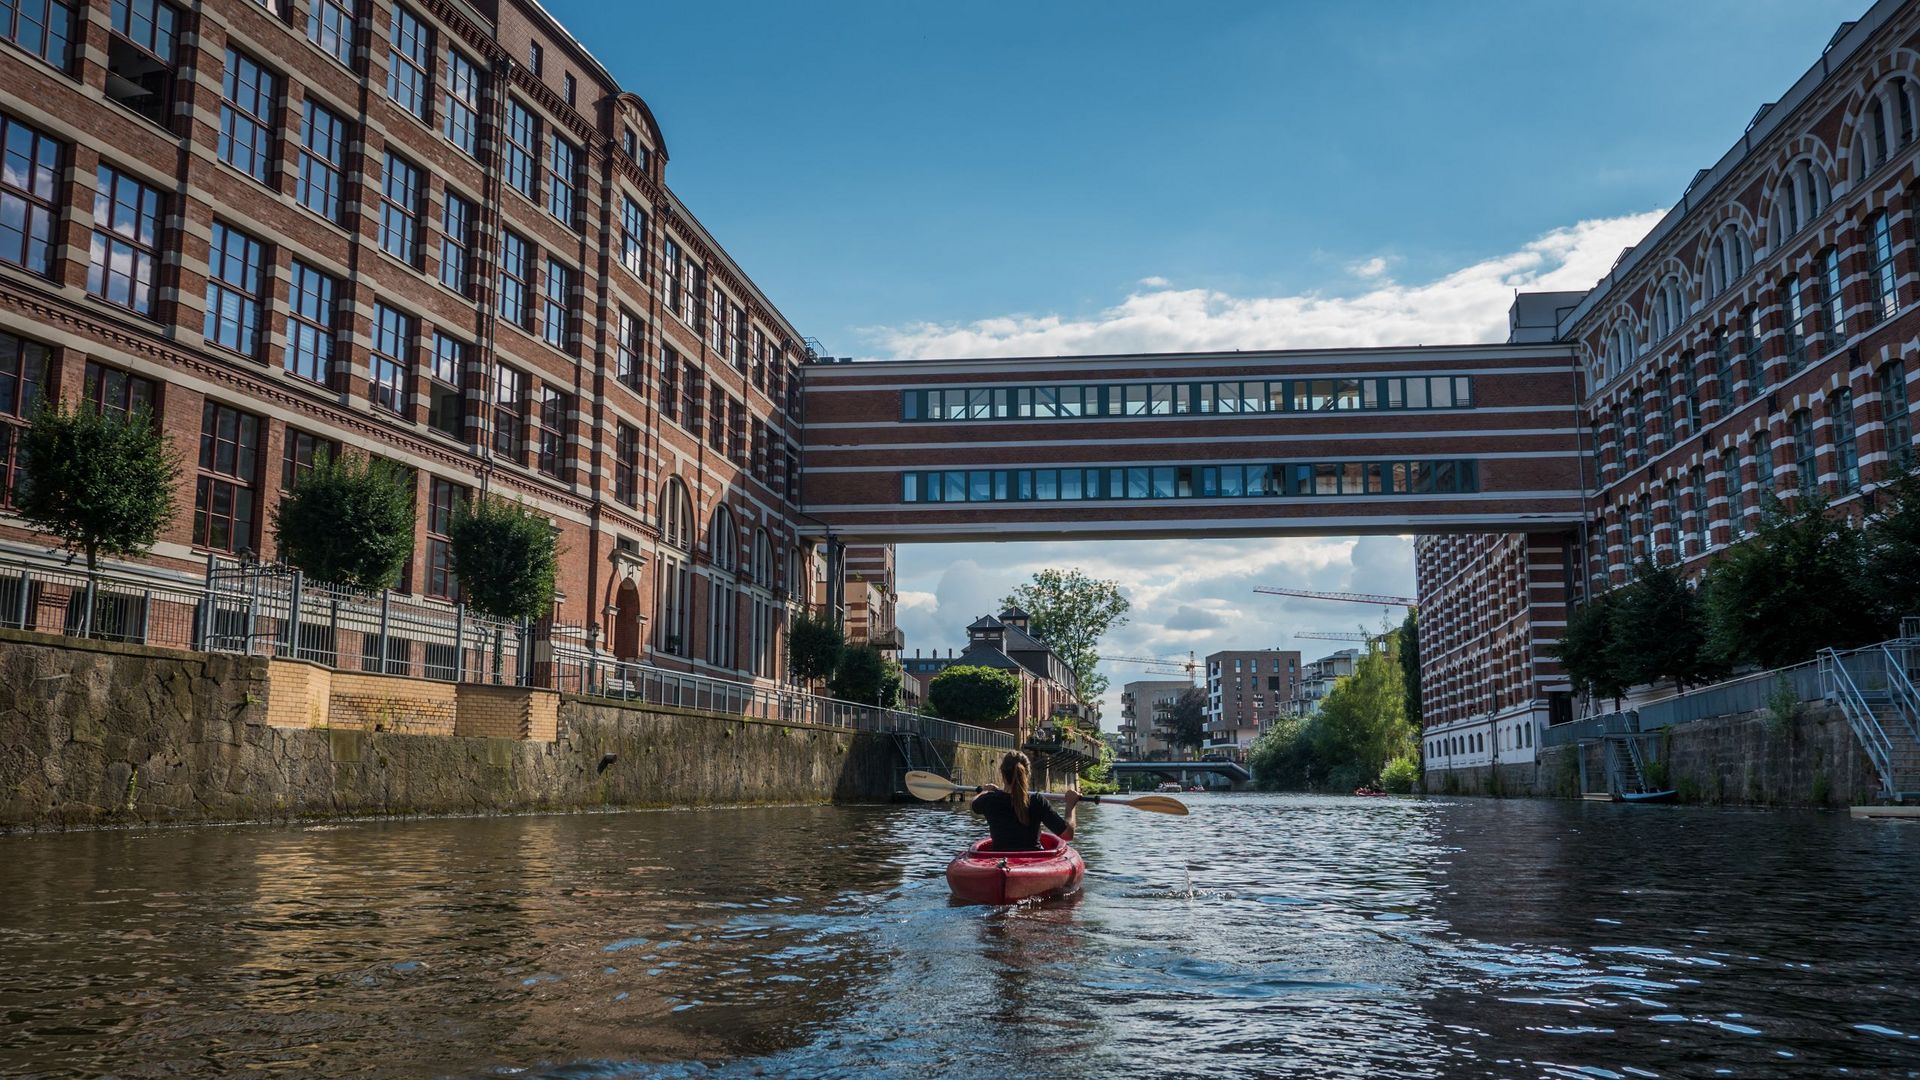 Kajak fährt auf dem Wasser auf Gebäude in attraktiver roten Backsteinarchitektur zu 